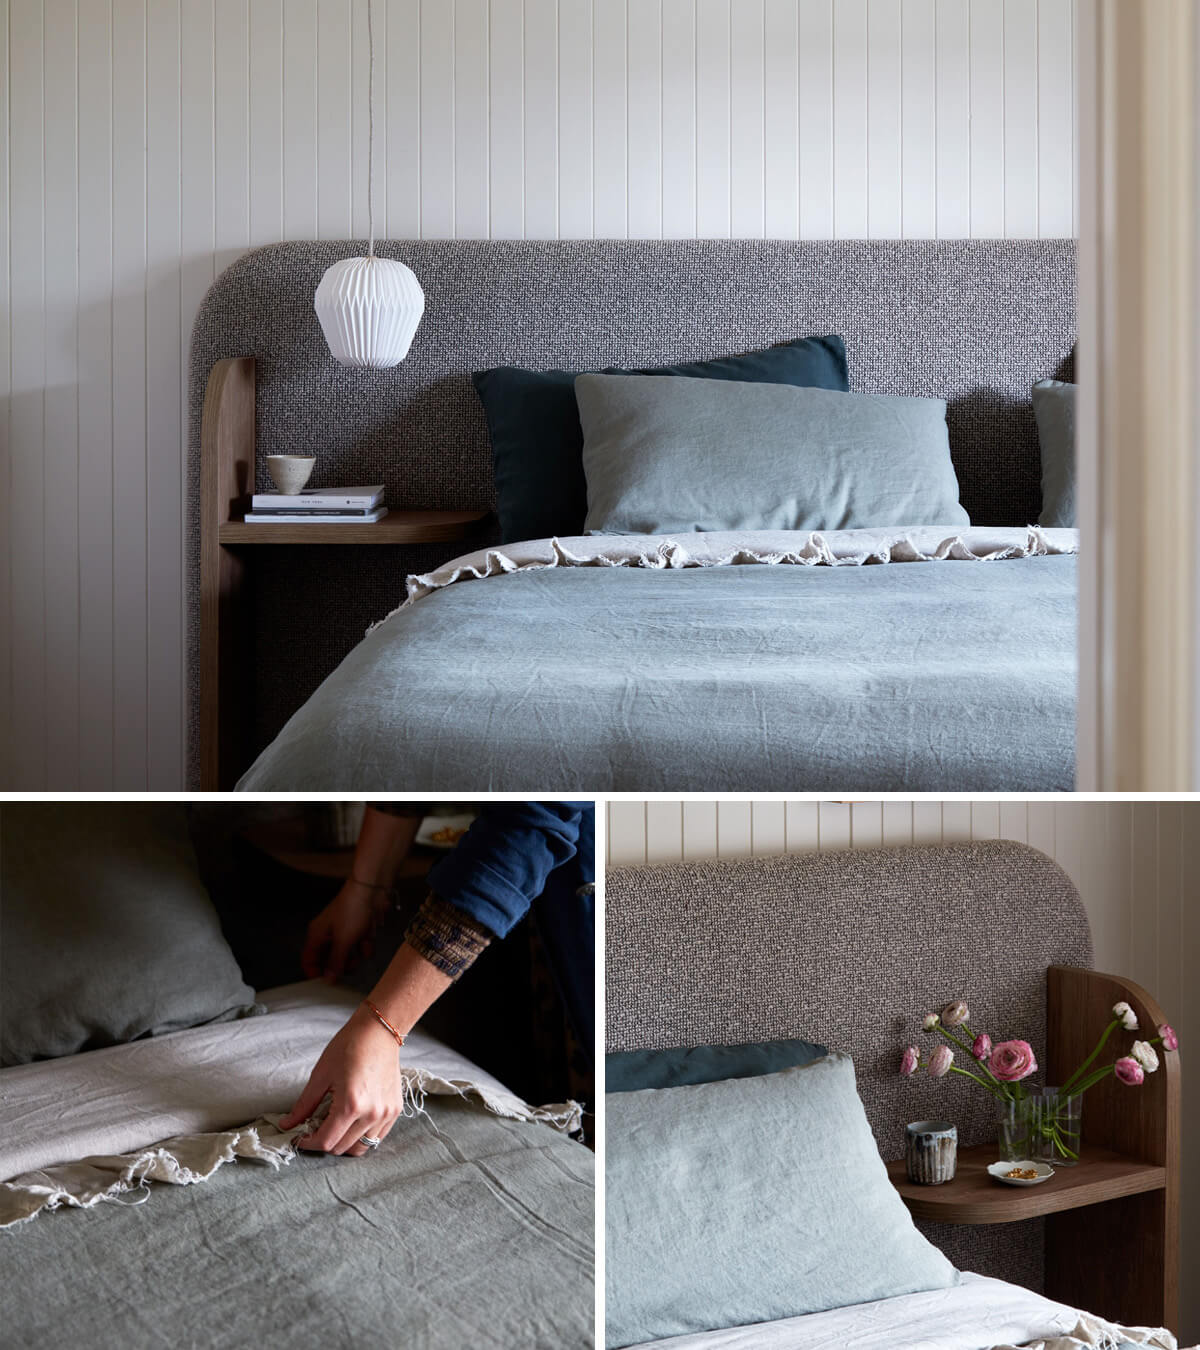 Alison Lewis' custom Zenn Design Bed